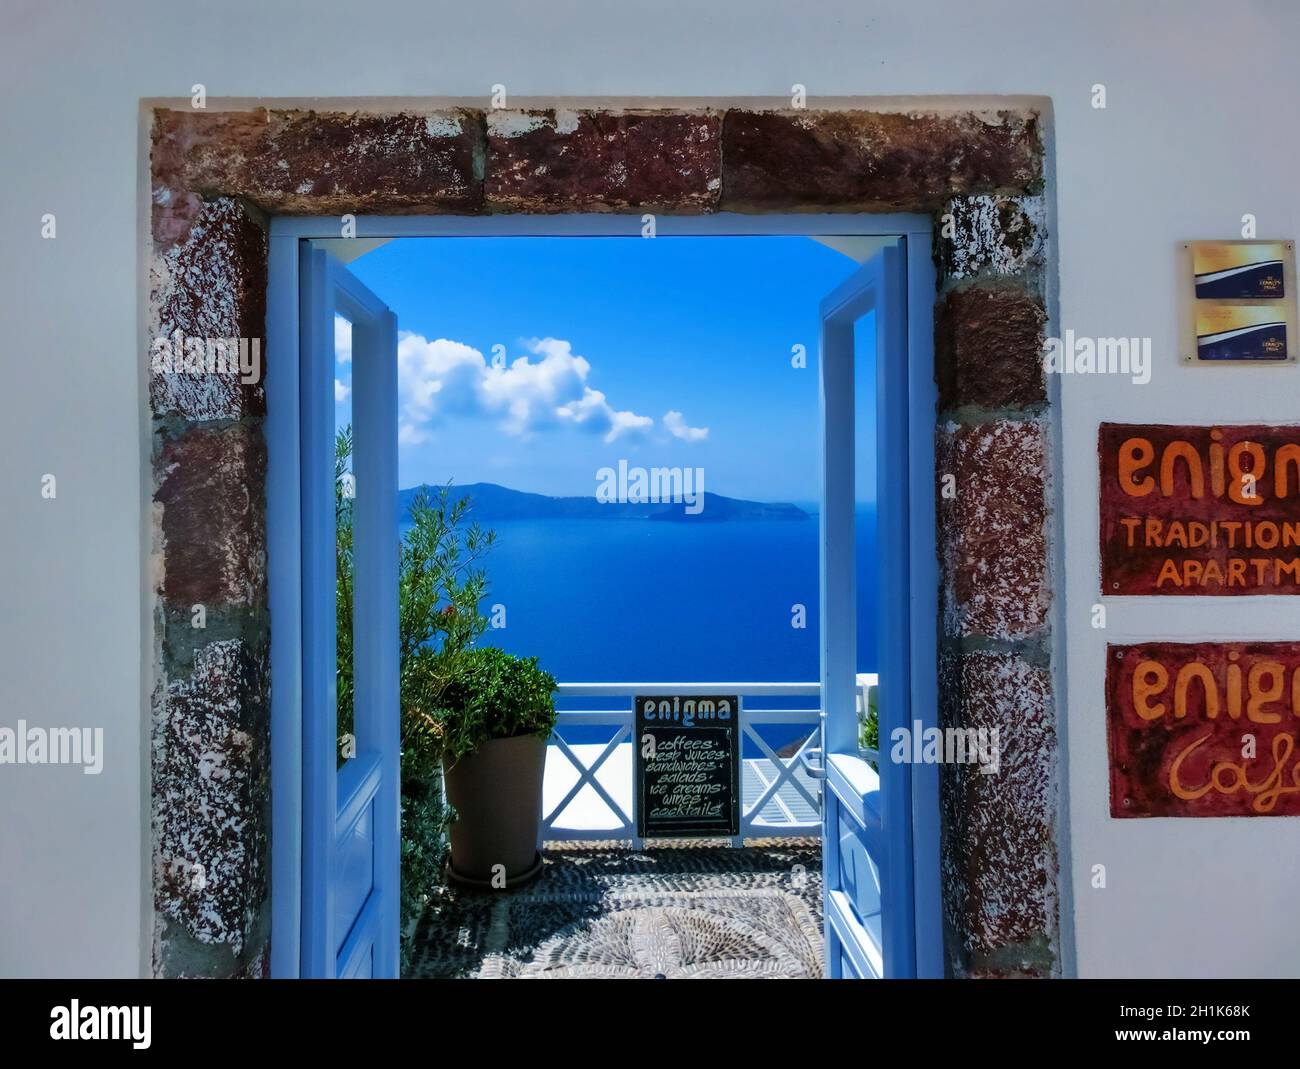 Fira, Griechenland - 10. Juni 2015: Der Eingang zum Enigma-Café auf Santorini, Griechenland am 10. Juni 2015. Es wird erwartet, dass bis zu 16 Millionen Touristen Griechenland besuchen werden Stockfoto